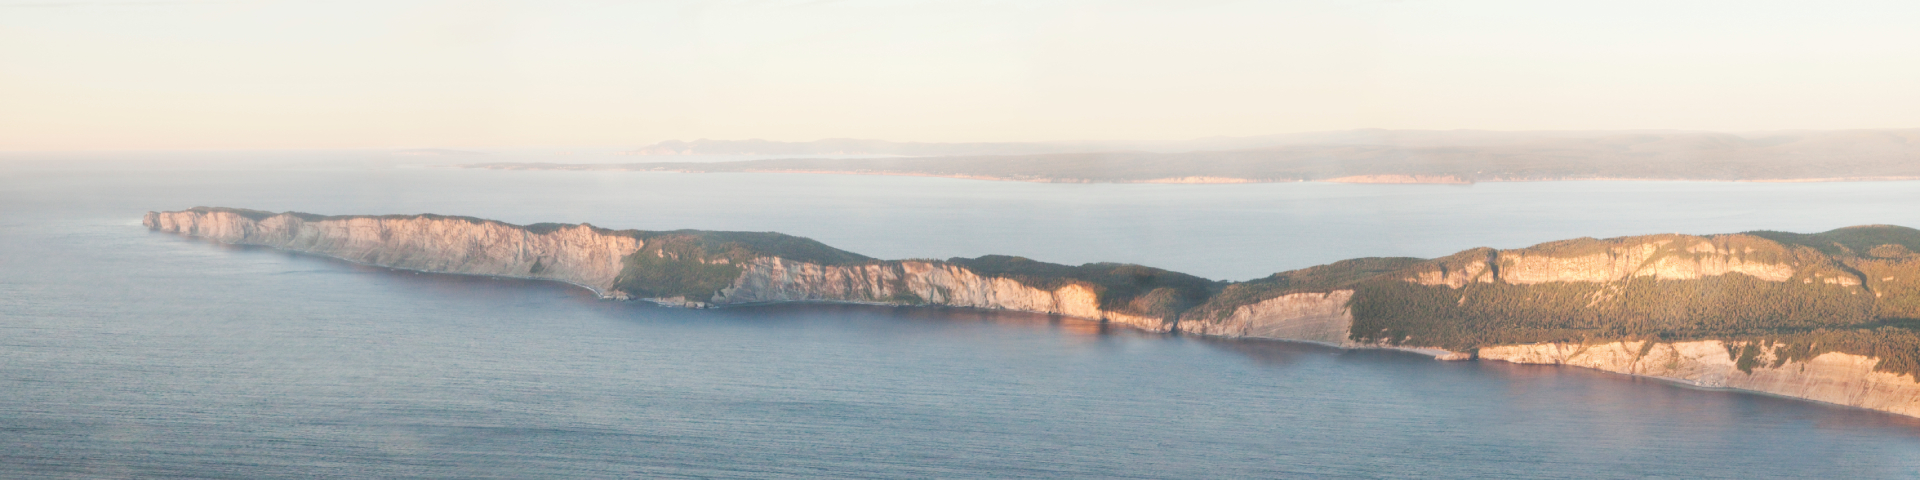 Vue aérienne d'une péninsule avec ses falaises. 